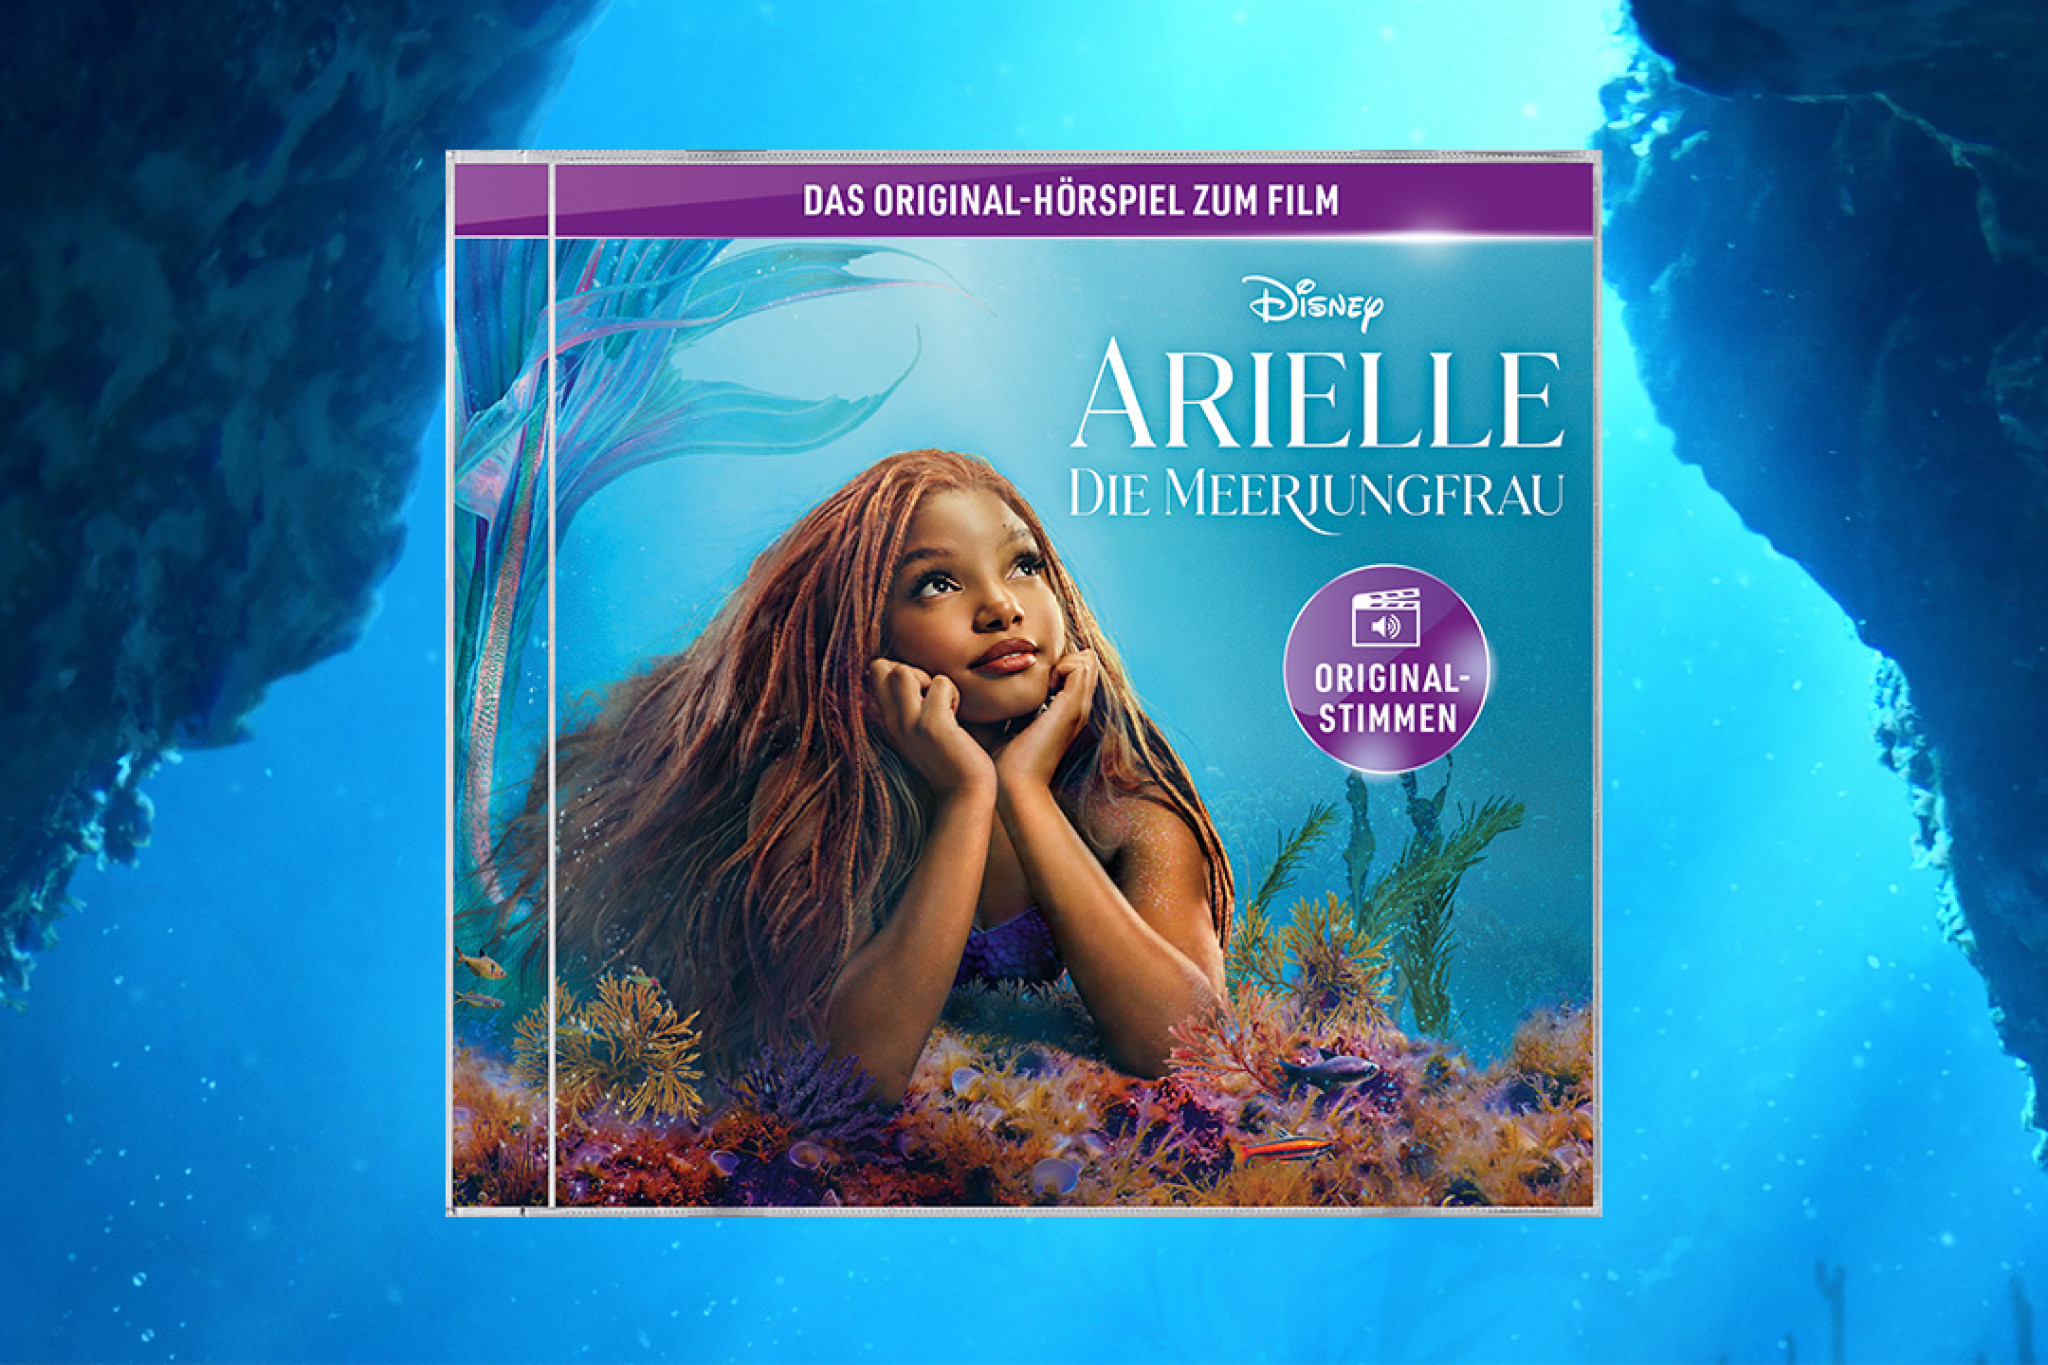 Disneys Hörspiel "Arielle, die Meerjungfrau"